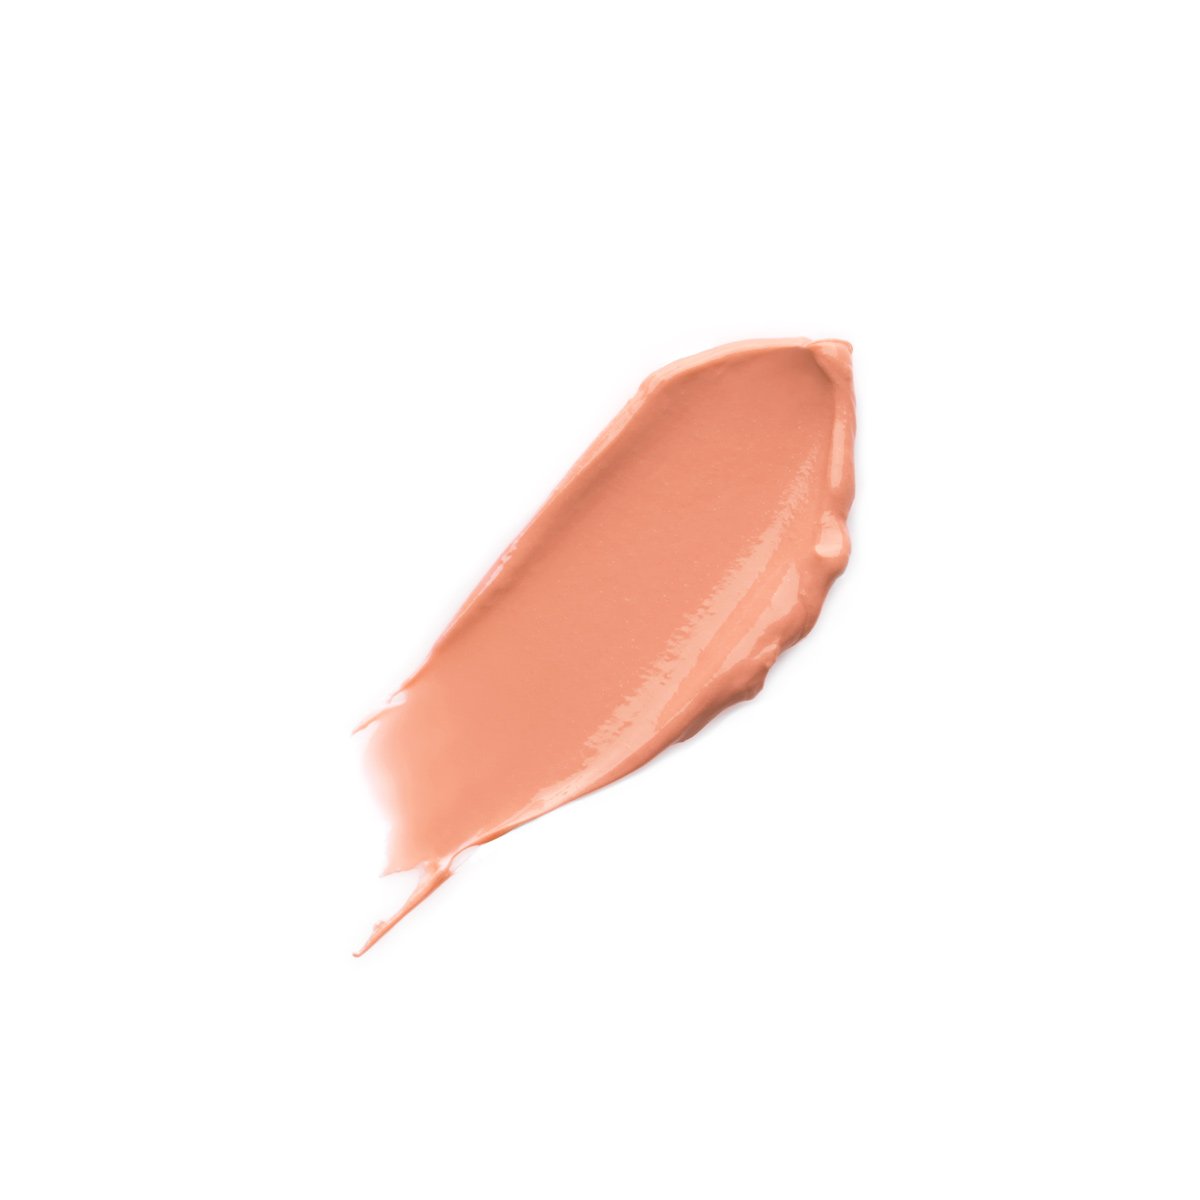 PARAMOUR - PEACHY CORAL - peachy coral lipstick lip balm